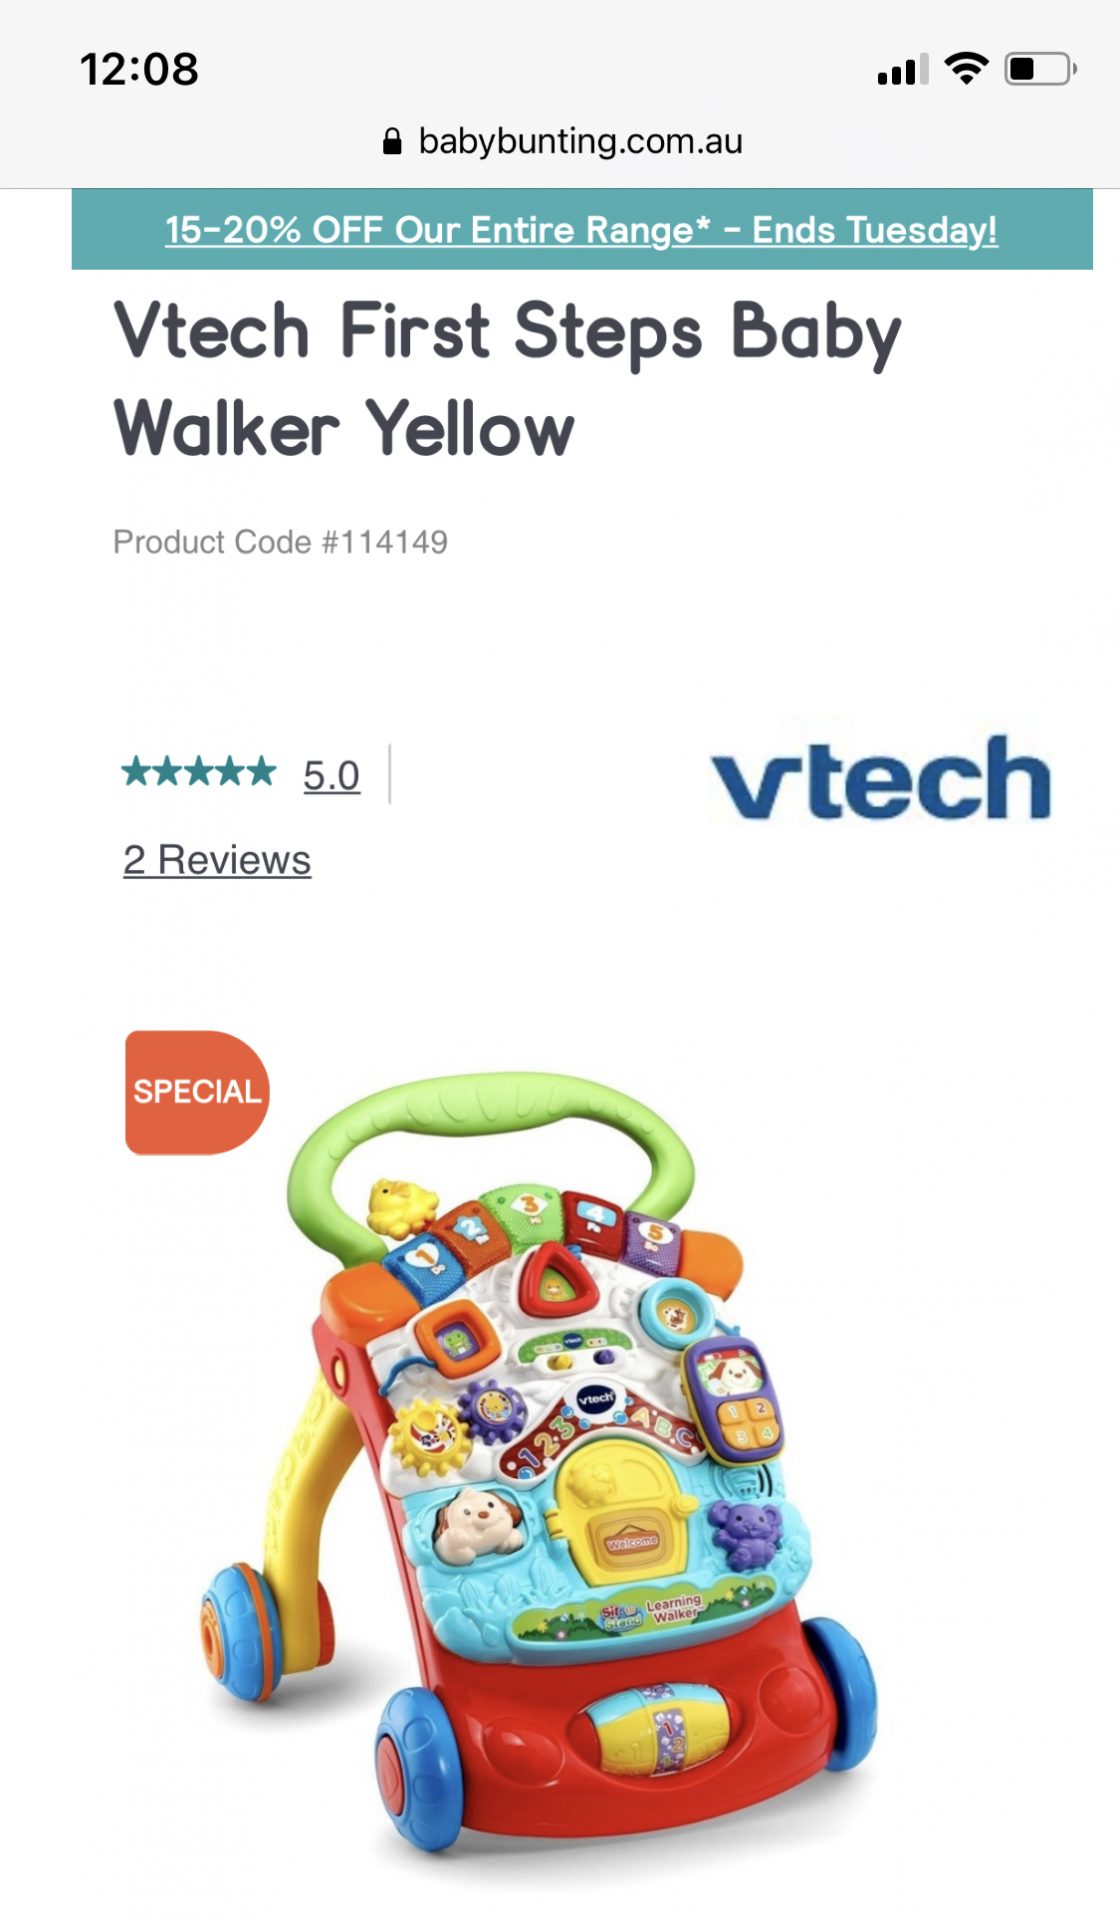 Vtech First step baby walker yellow